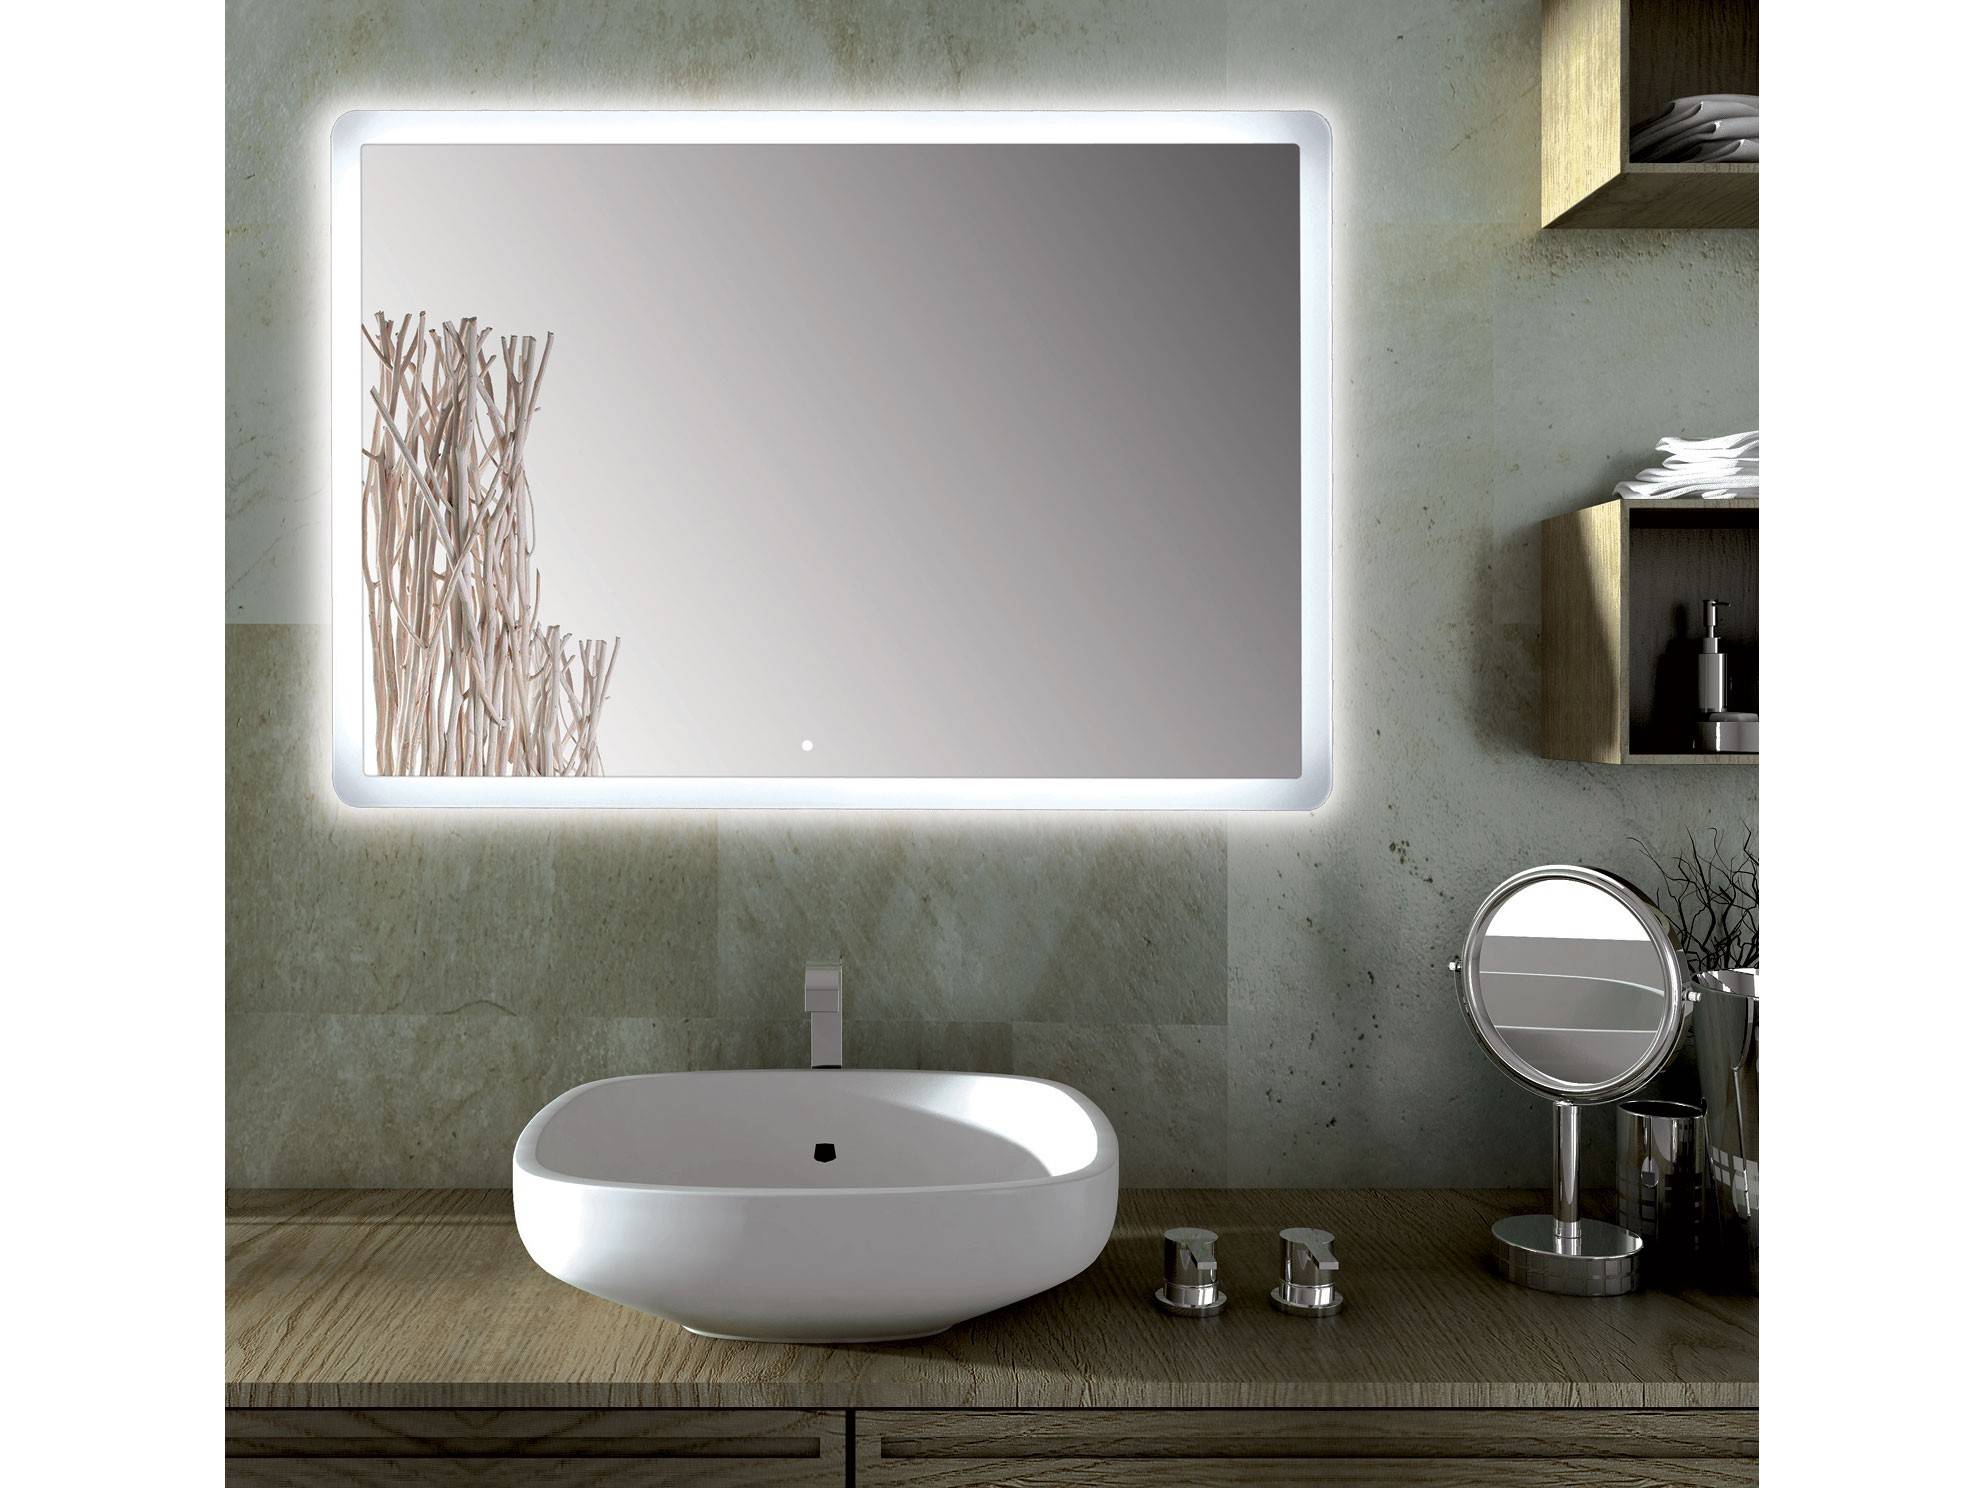 Specchio da bagno rettangolare con barra luminosa a Led — Rehabilitaweb